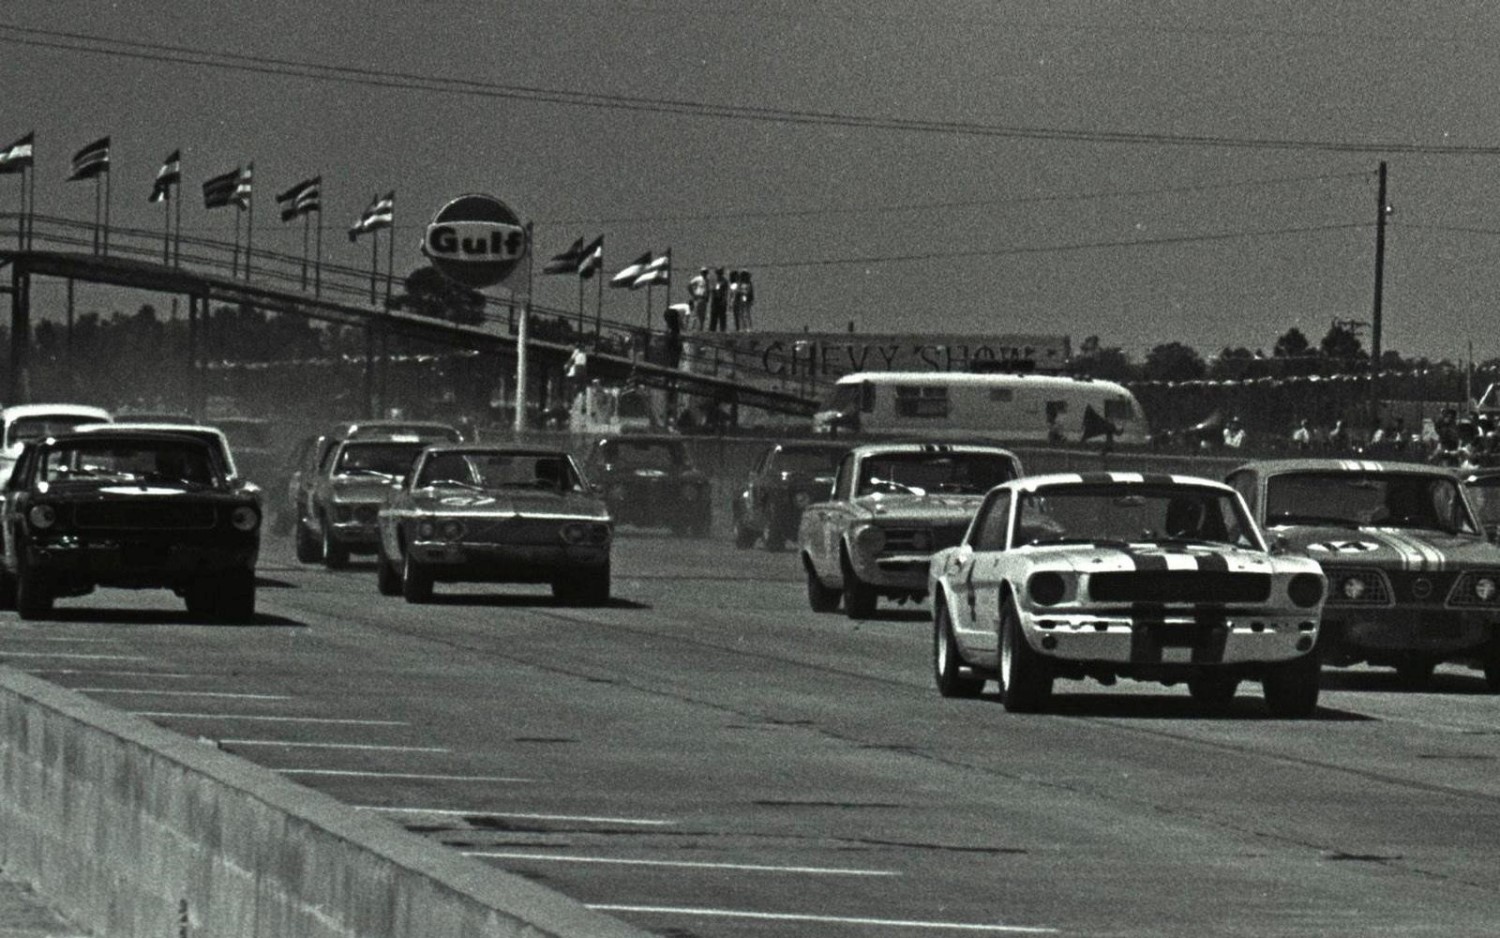 Trans-Am at Sebring in 1966